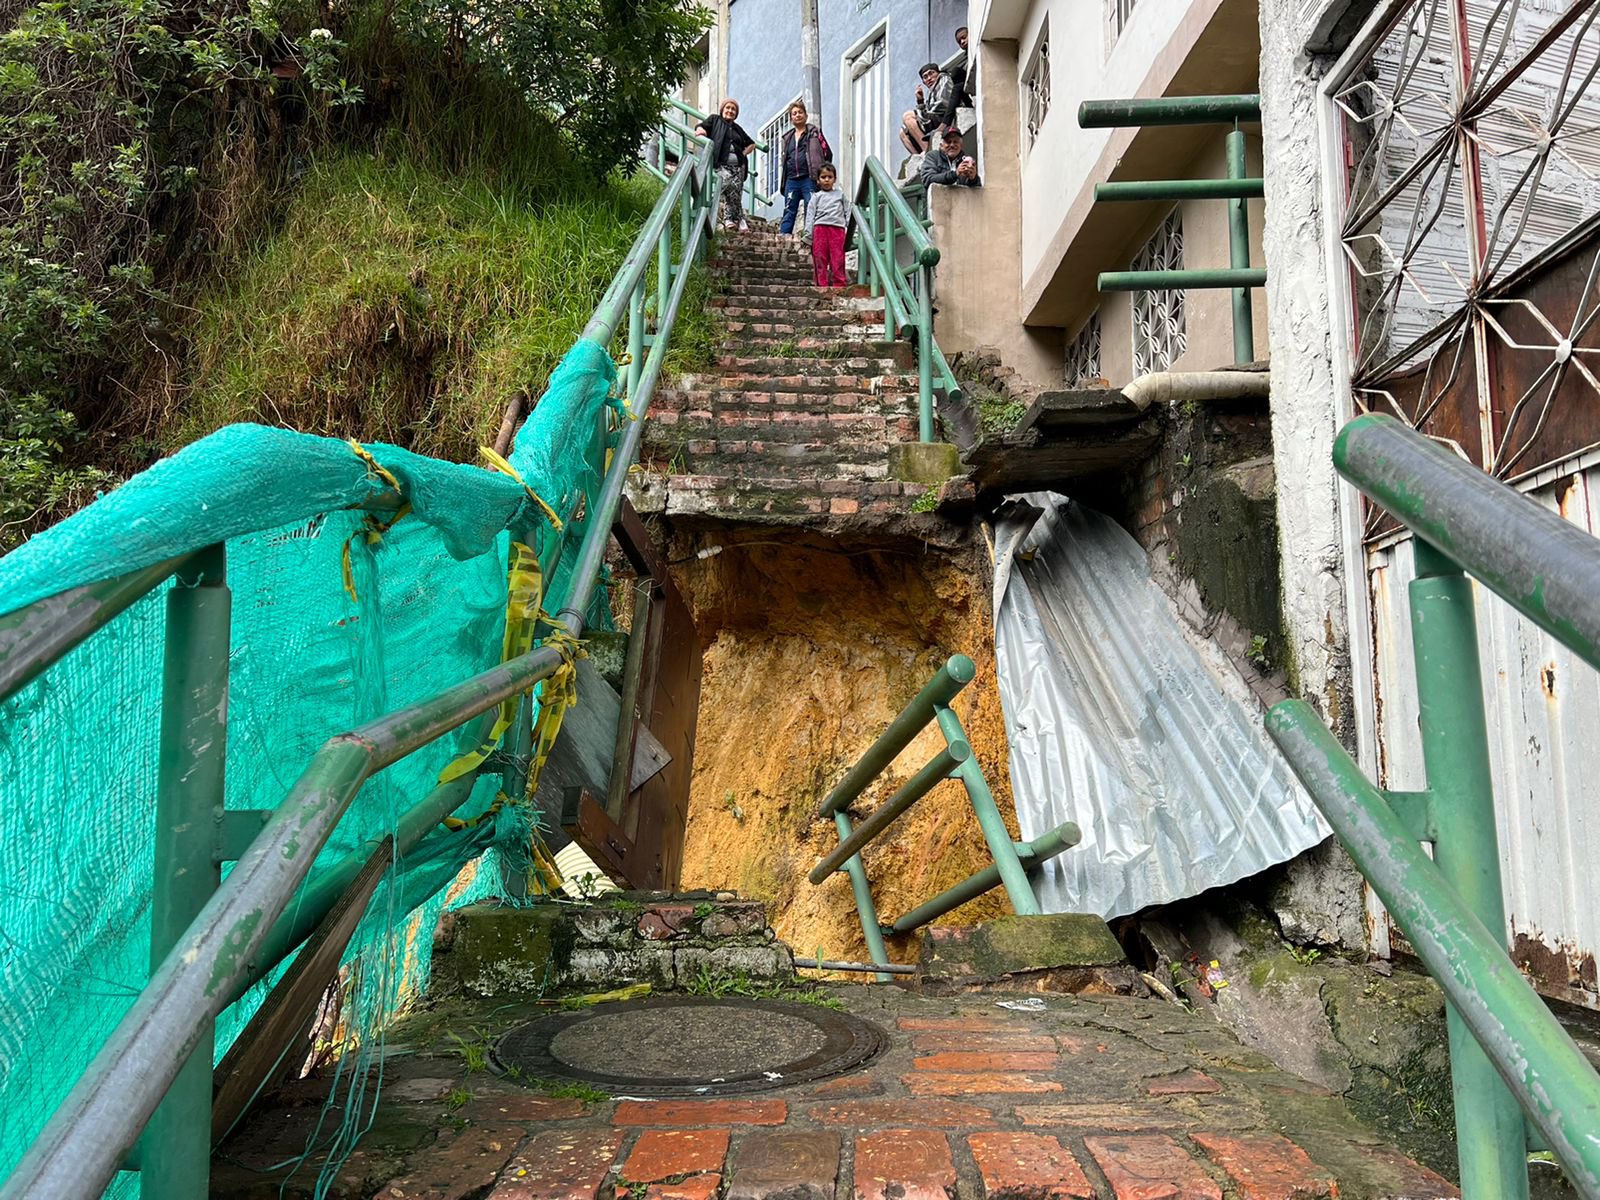 Escalera se desplomó por lluvias en el sur de Bogotá: van 17 familias afectadas